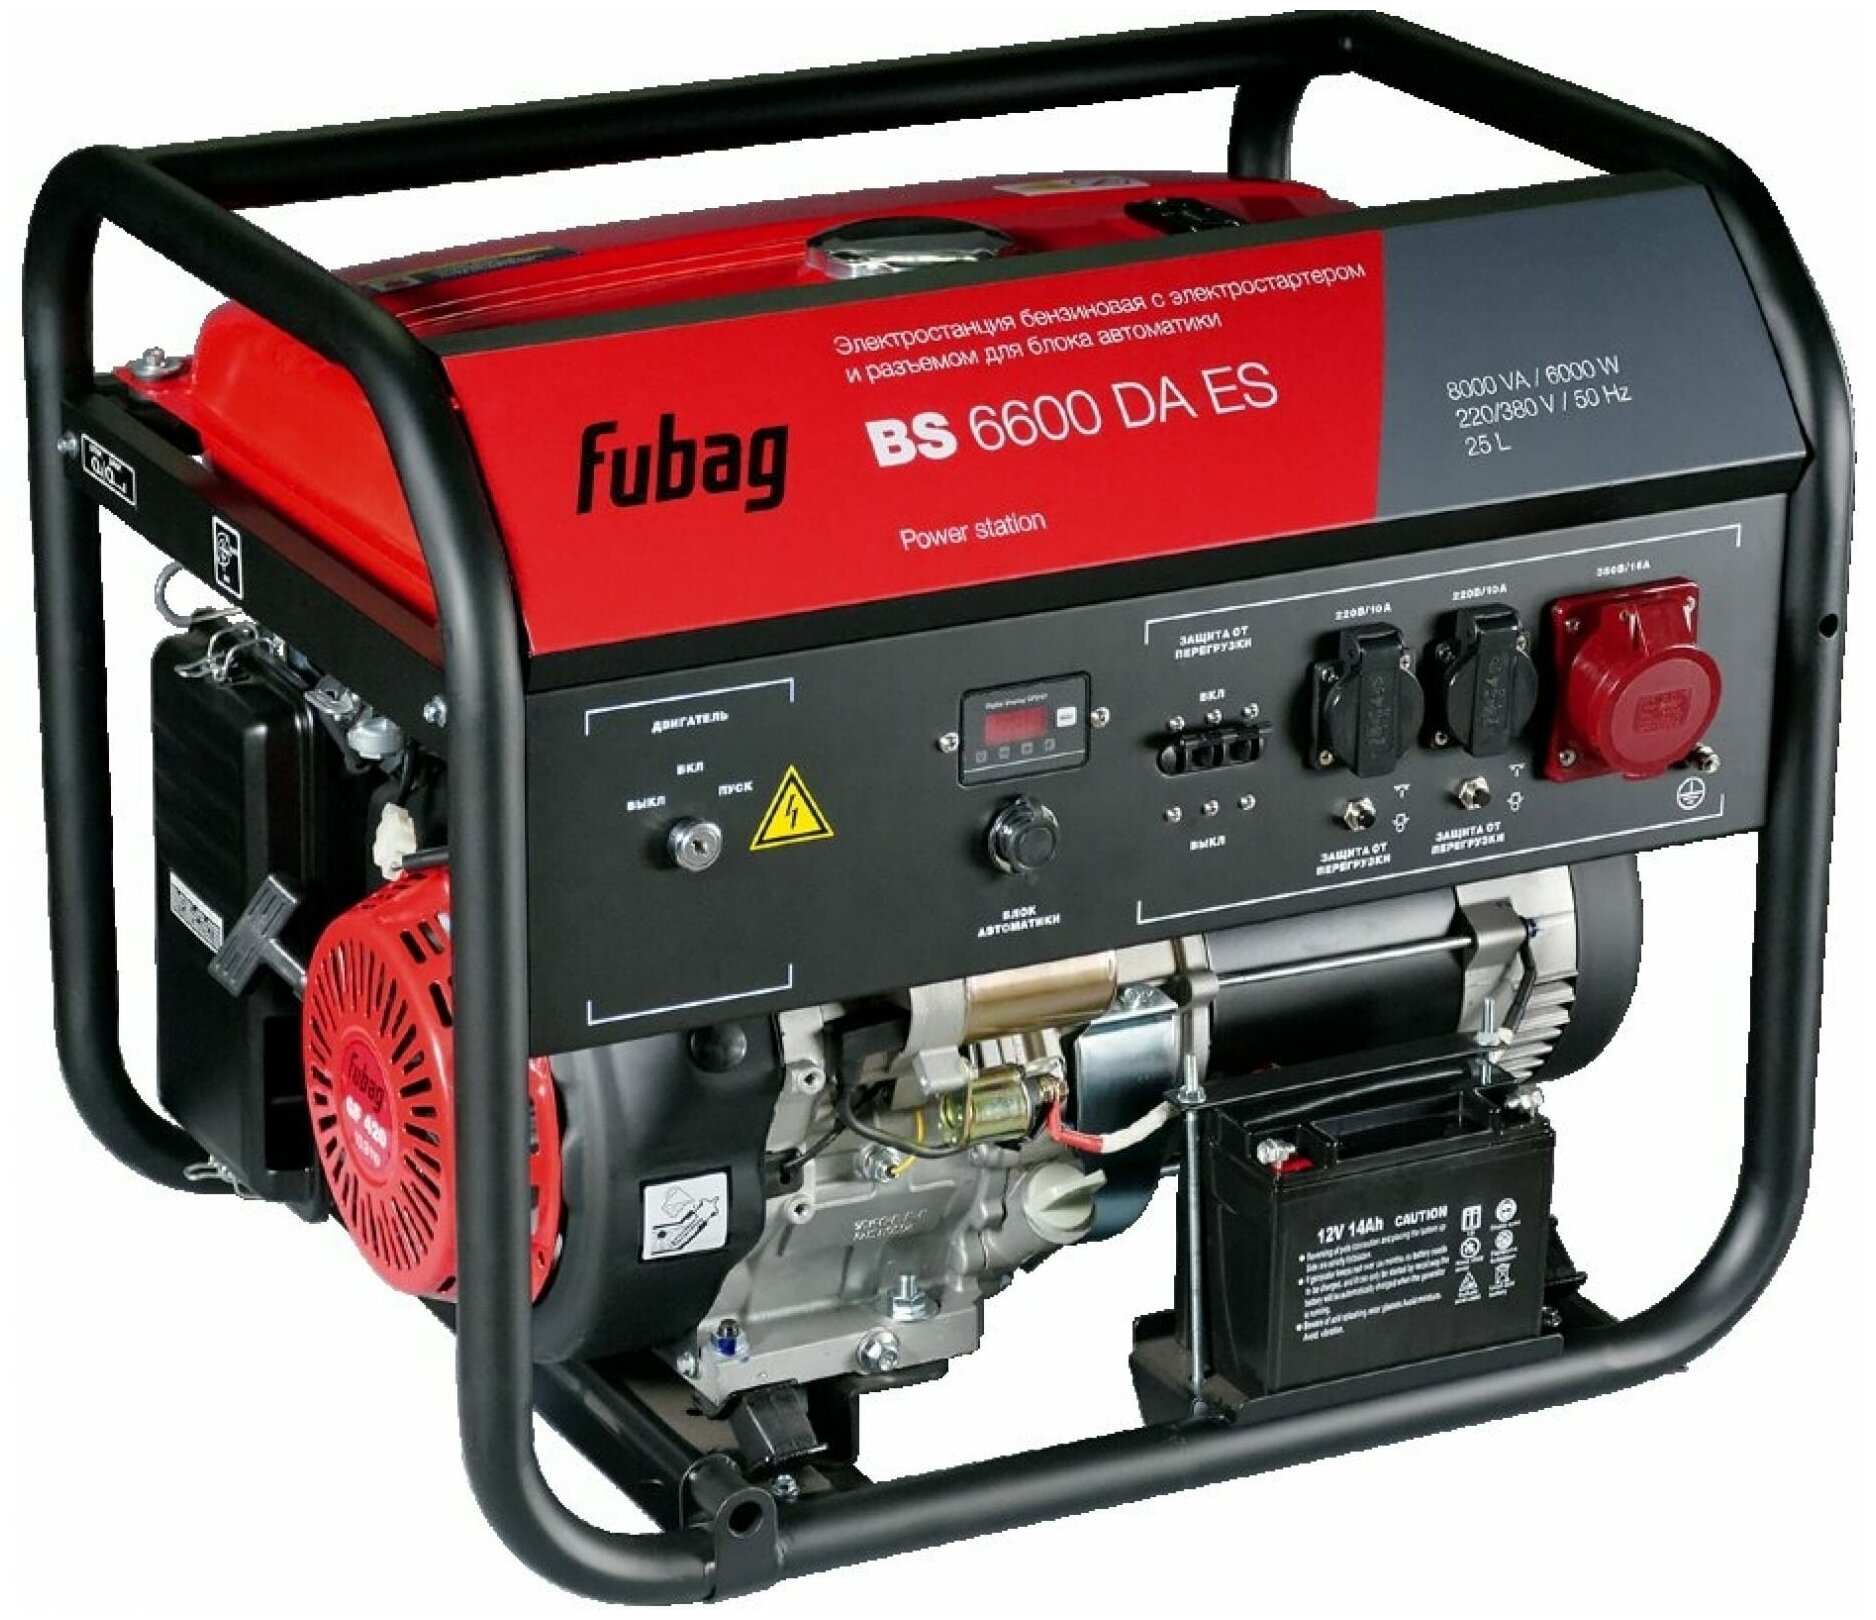 Fubag Генератор бензиновый FUBAG BS 6600 DA ES с электростартером и коннектором автоматики